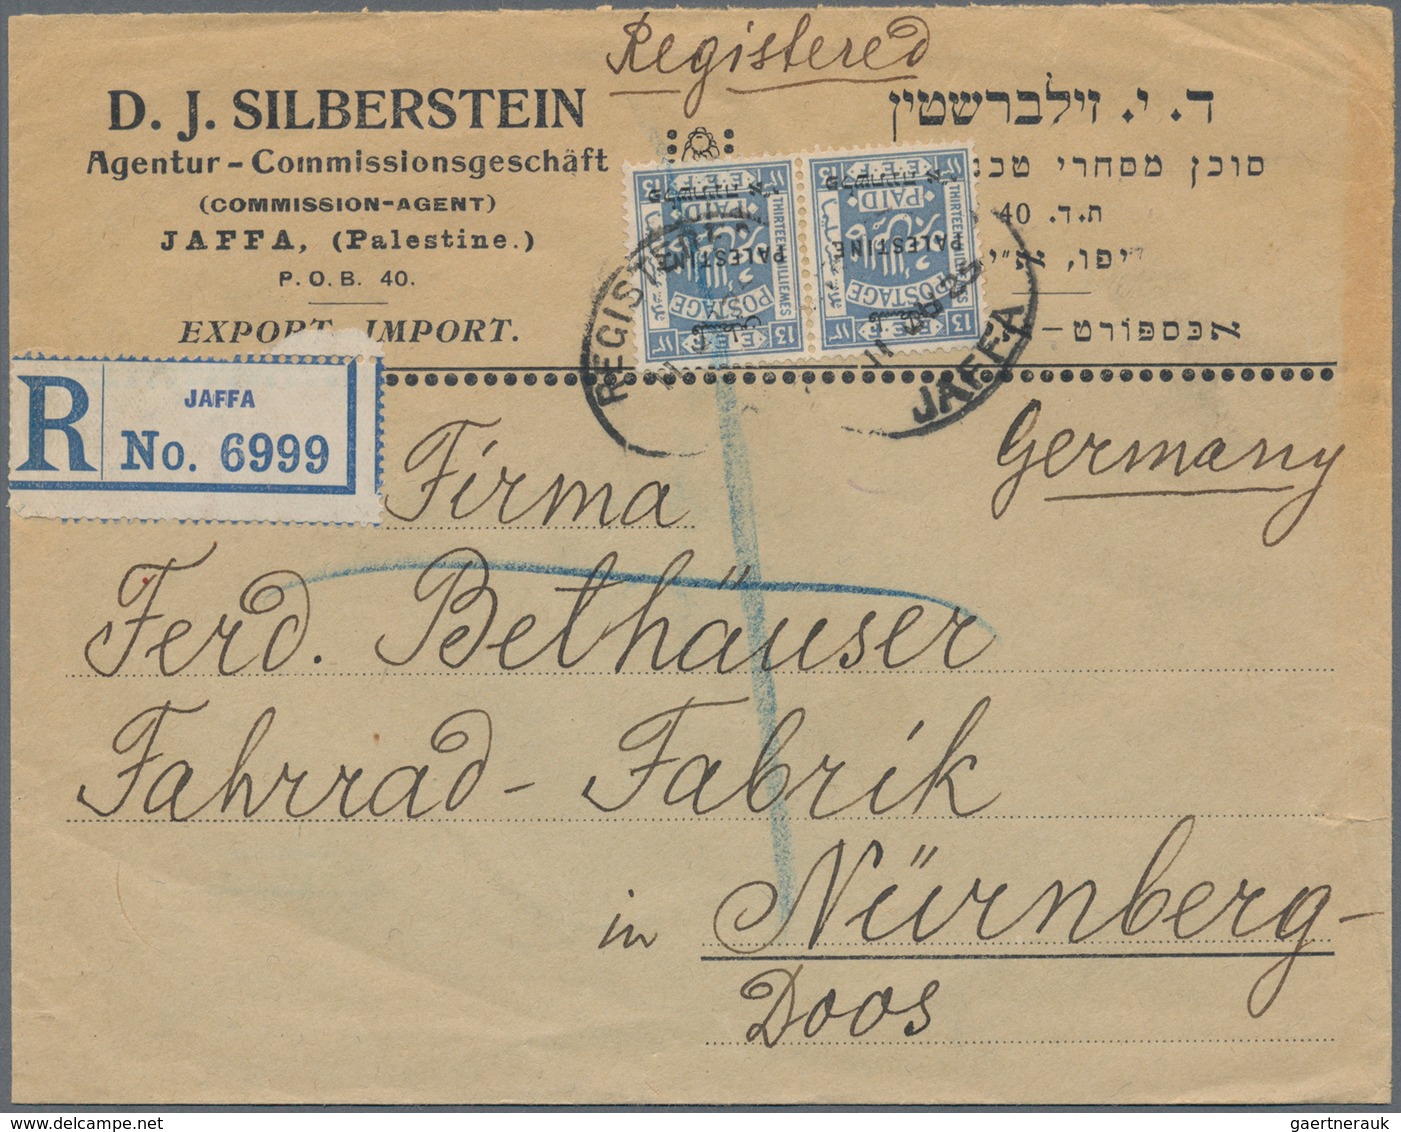 Palästina: 1925/72, Covers (9 Inc. One Used Ppc,), Plus Israel (18 Inc. One Used Stationery), Regist - Palestine